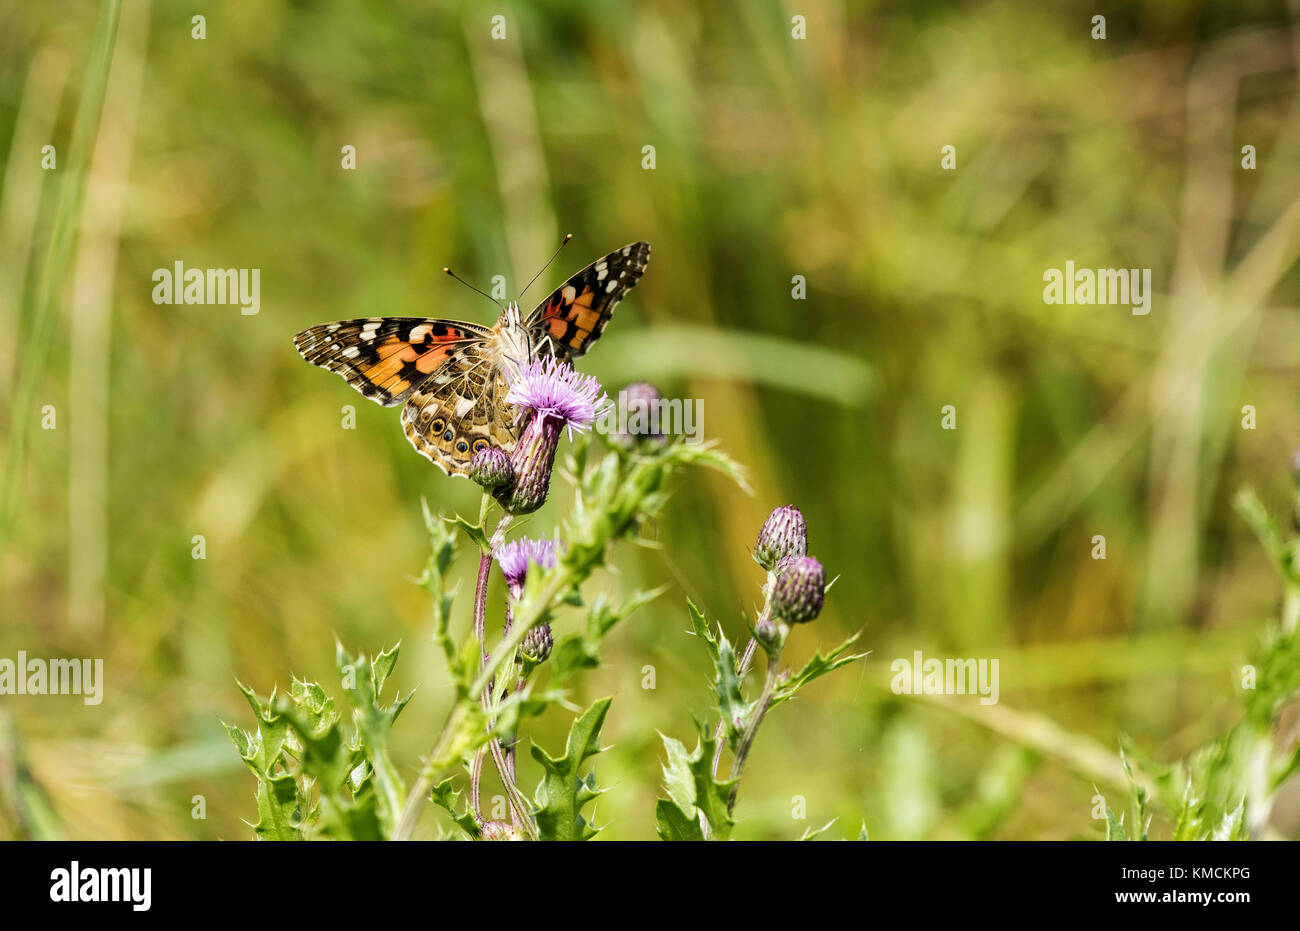 Distelfalter Schmetterling auf einer Distel Stockfoto